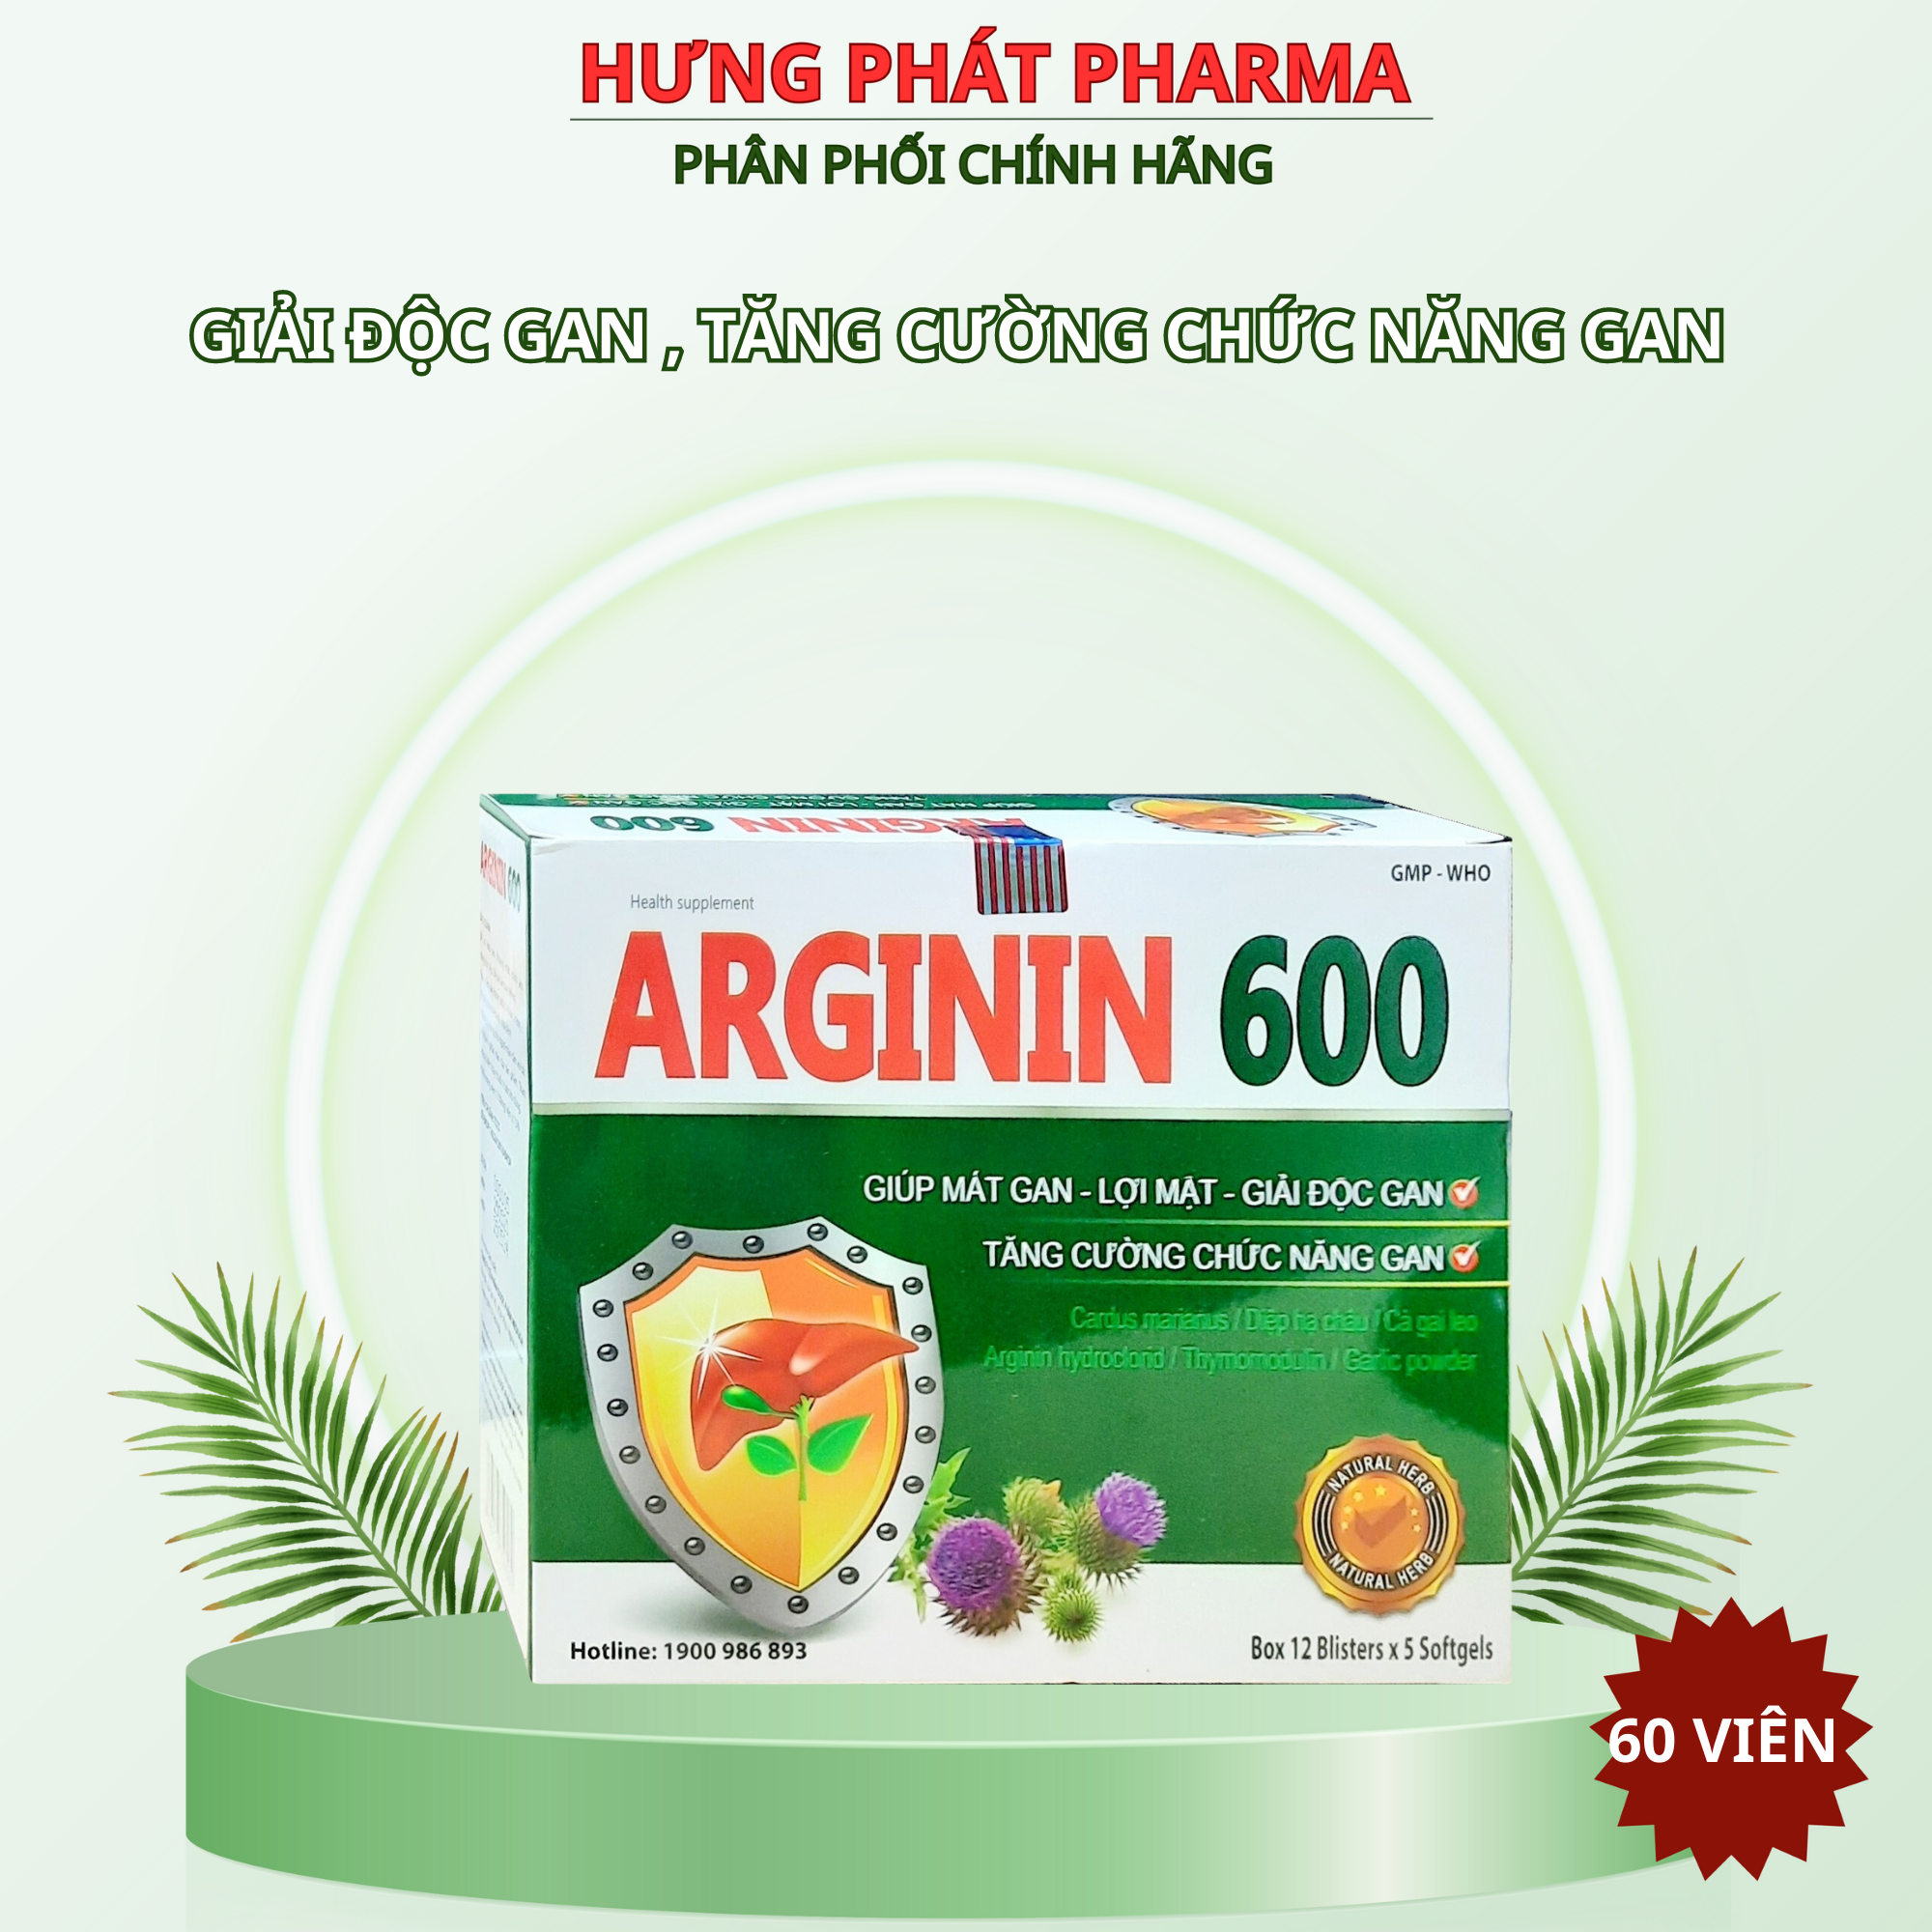 Viên uống Arginin 600 giúp tăng cường chức năng gan, thanh nhiệt, giải độc